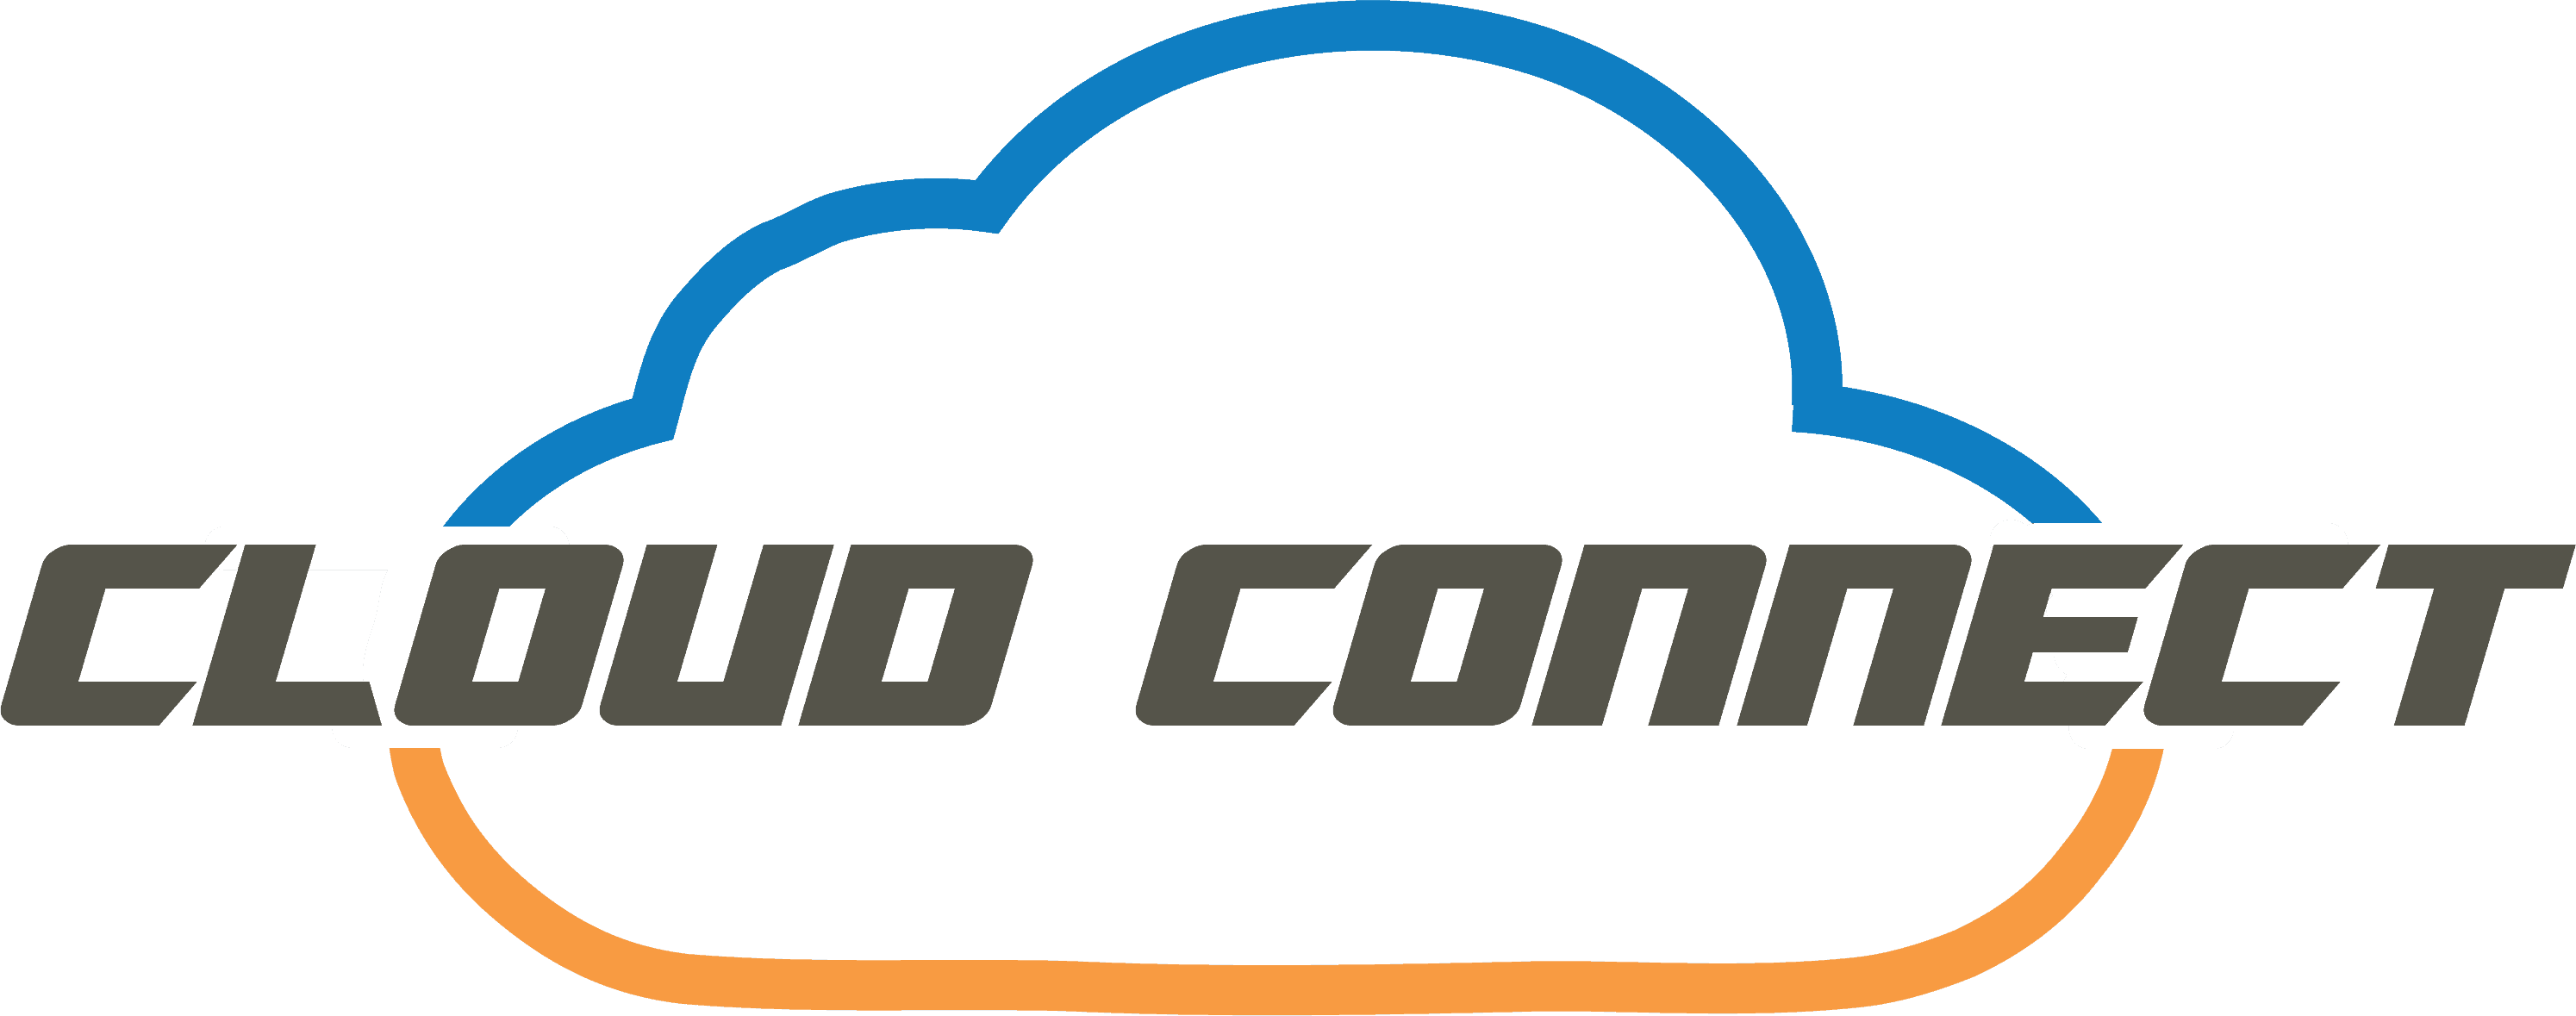 BB Cloud Connect2